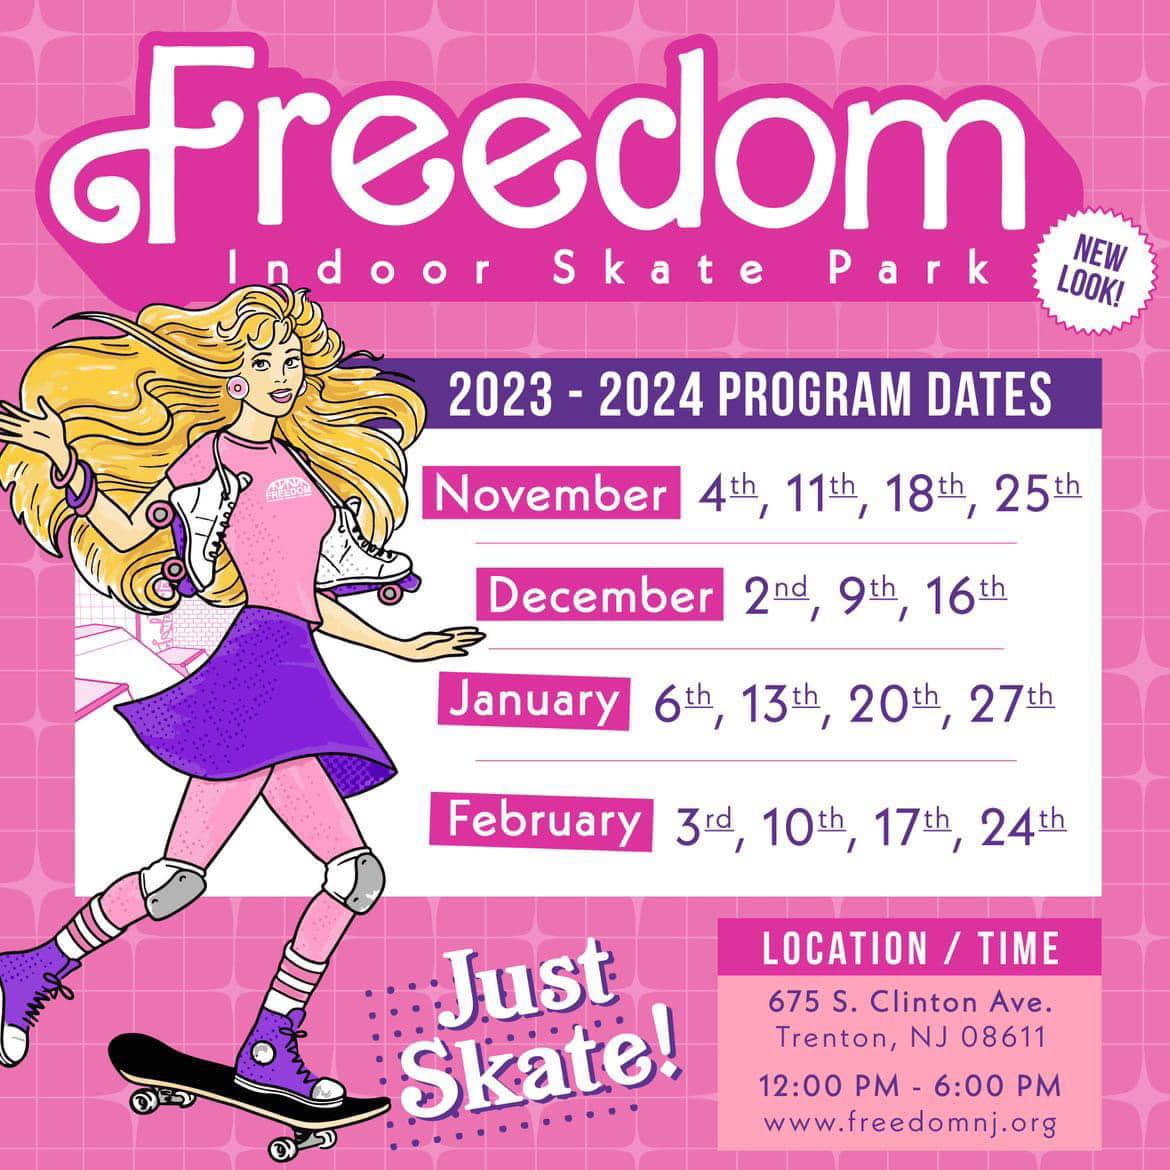 Freedom Indoor Skate Park - Just Skate!